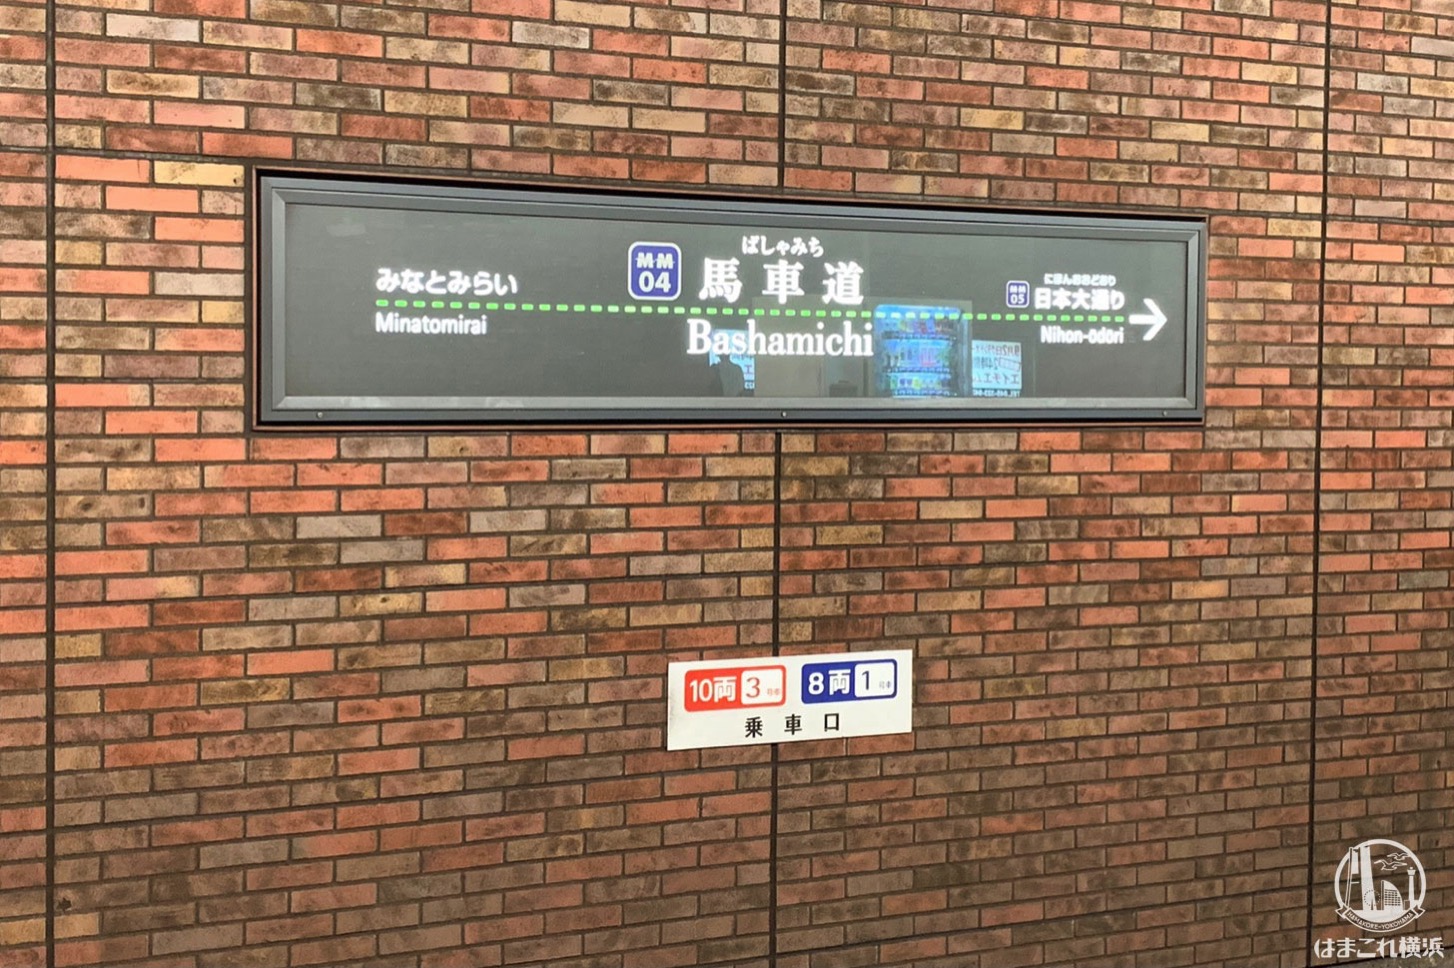 みなとみらい線 馬車道駅に副名称 横浜市役所 6月6日より はまこれ横浜